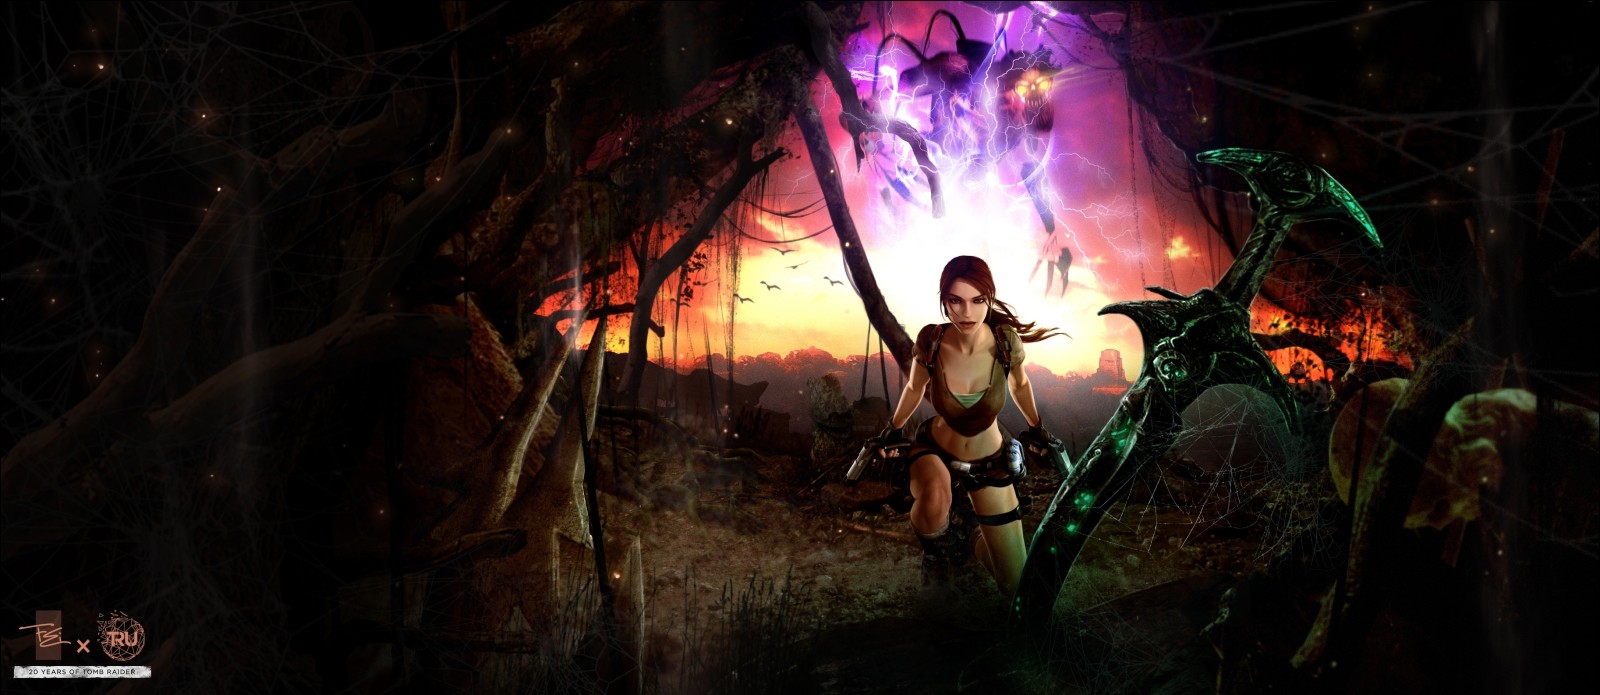 gadis, pedang, Legenda, Tomb Raider, Lara Croft, Excalibur